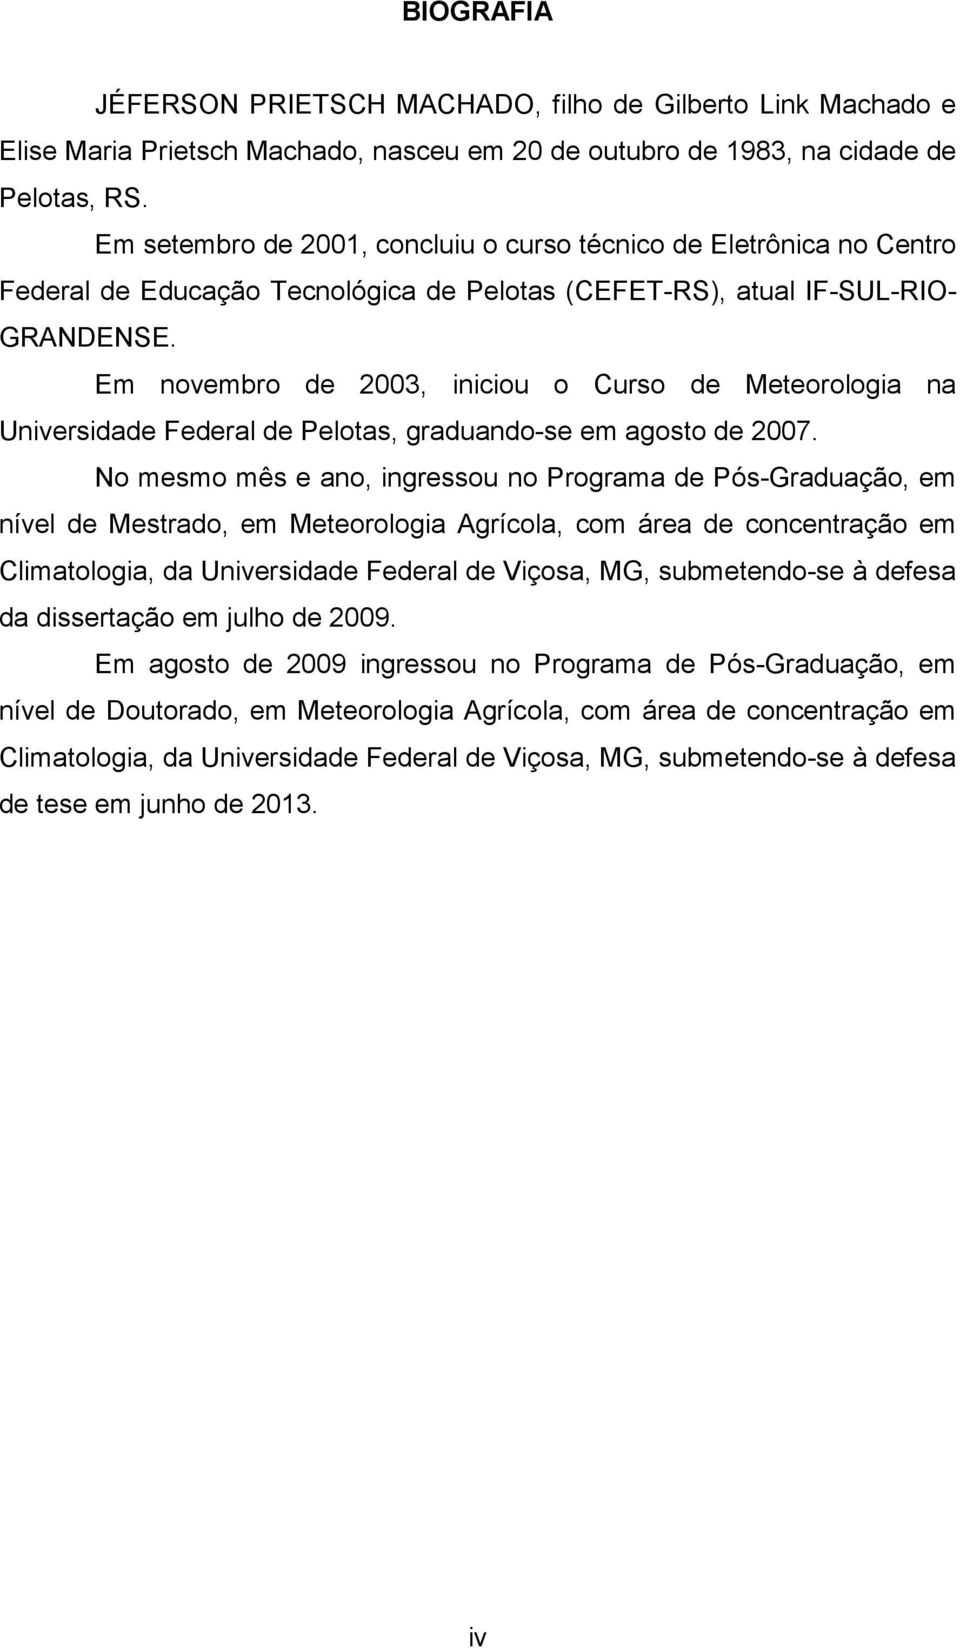 Em novembro de 2003, iniciou o Curso de Meteorologia na Universidade Federal de Pelotas, graduando-se em agosto de 2007.